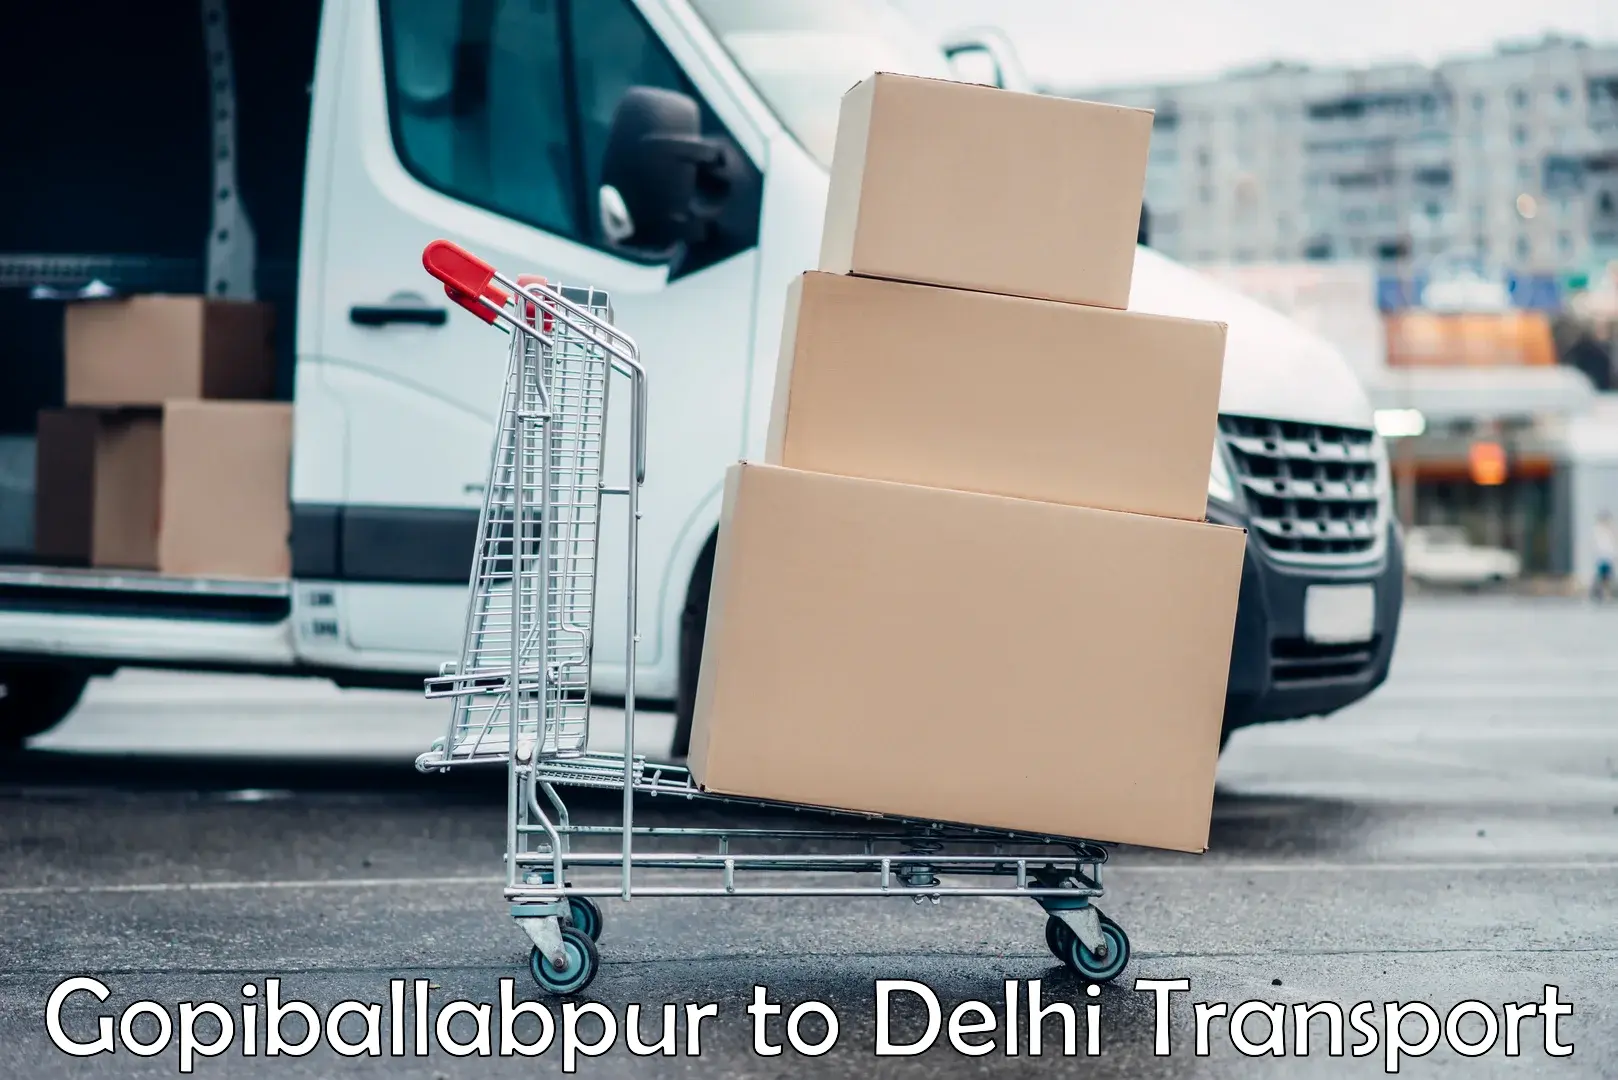 Delivery service Gopiballabpur to Ashok Vihar